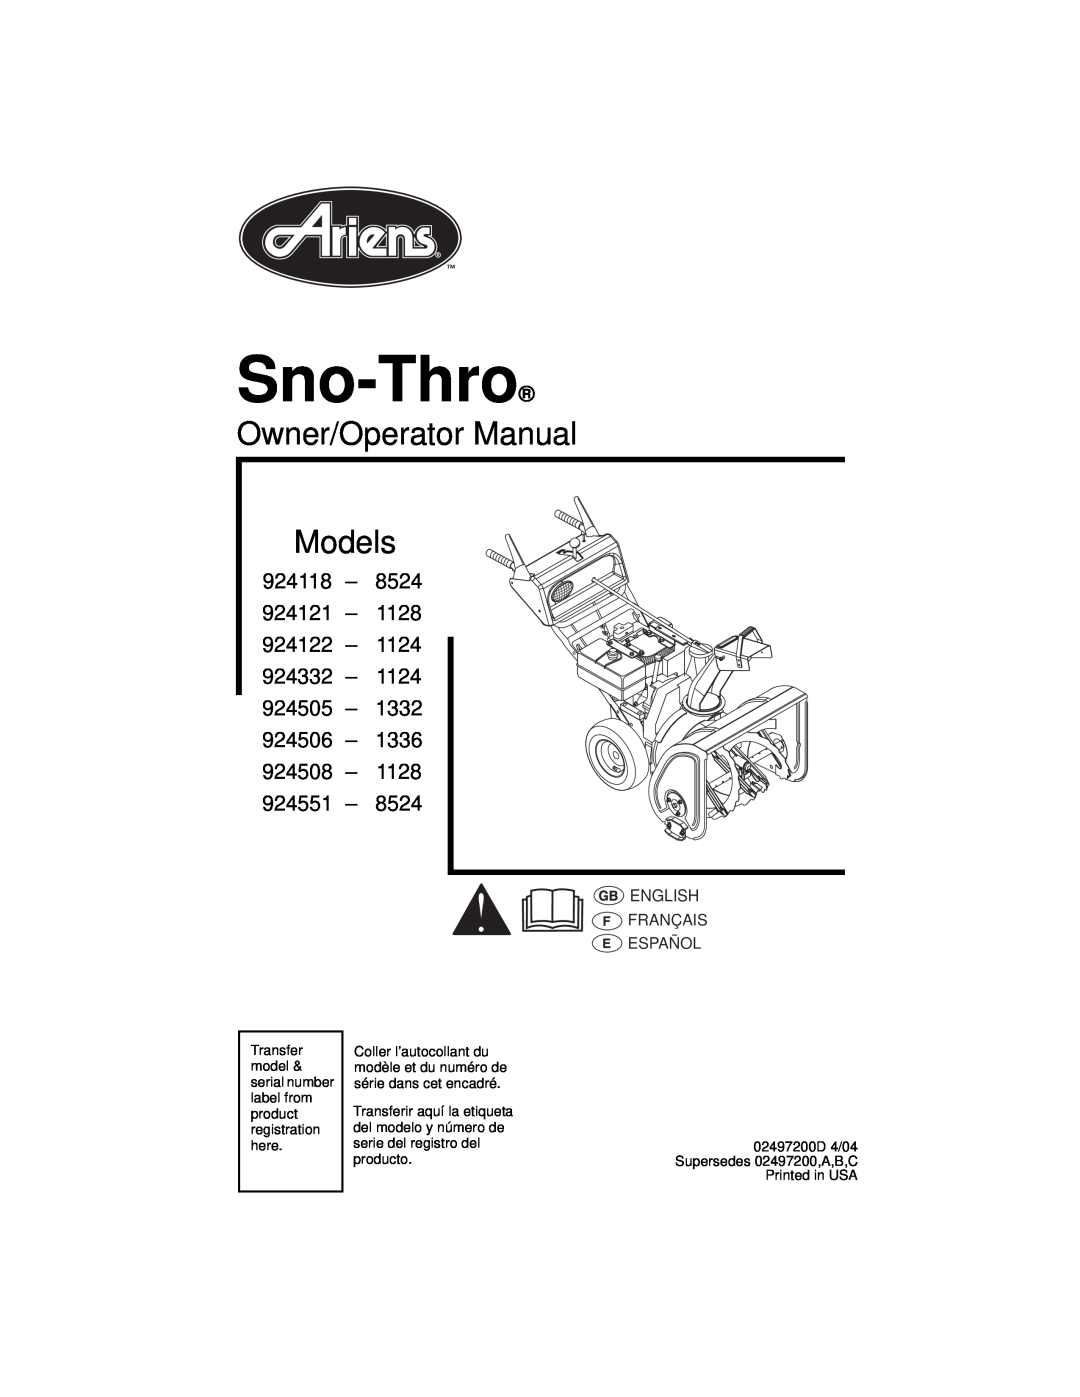 Ariens 924551 8524, 924118 8524 manual Sno-Thro, Owner/Operator Manual Models, 924118 – 924121 – 924122 – 924332 – 924505 